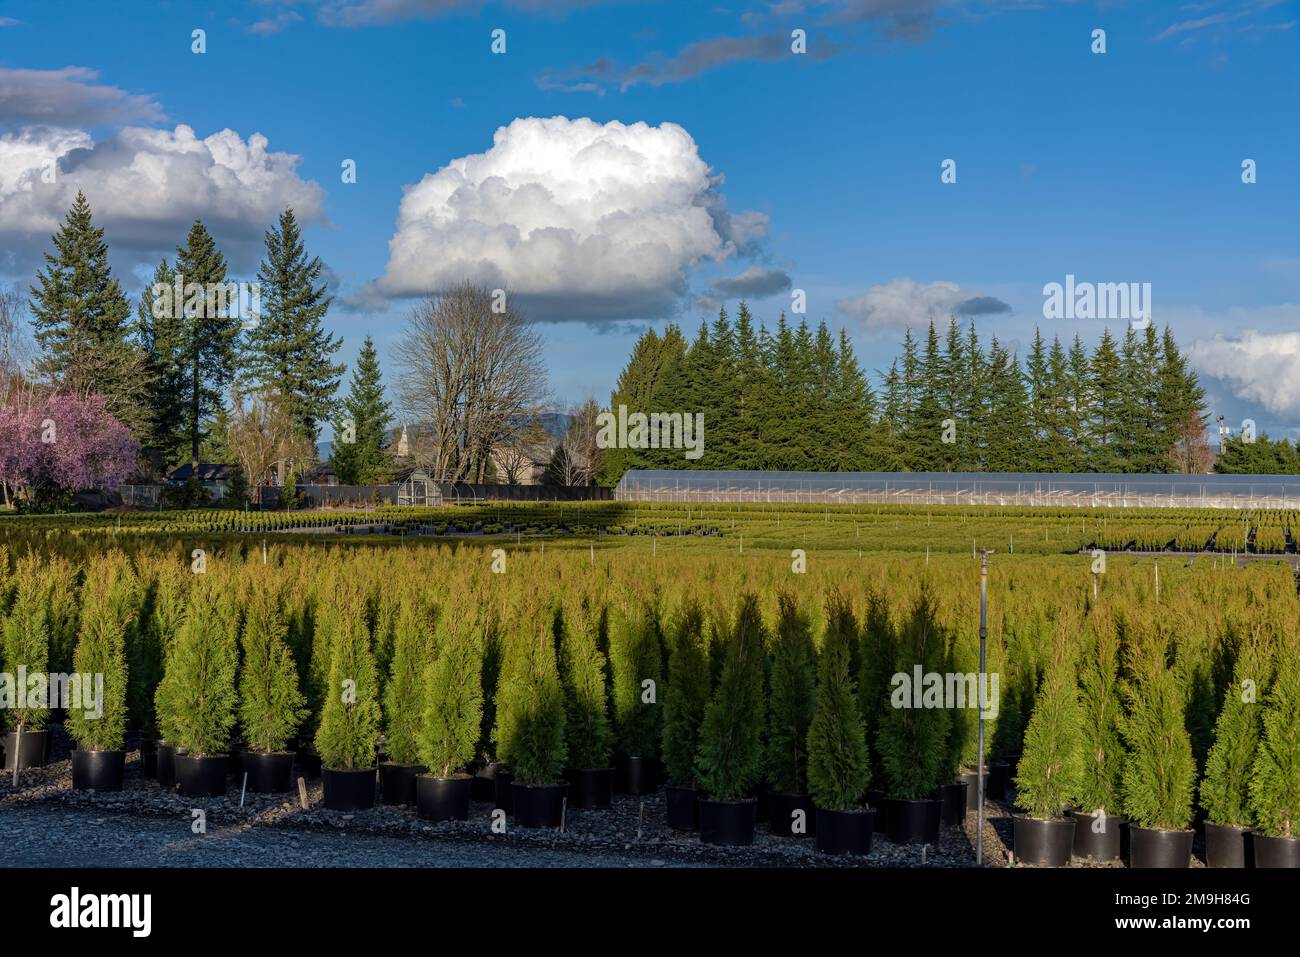 Baumfarm im US-Bundesstaat Oregon mit zahlreichen Topfbäumen Stockfoto